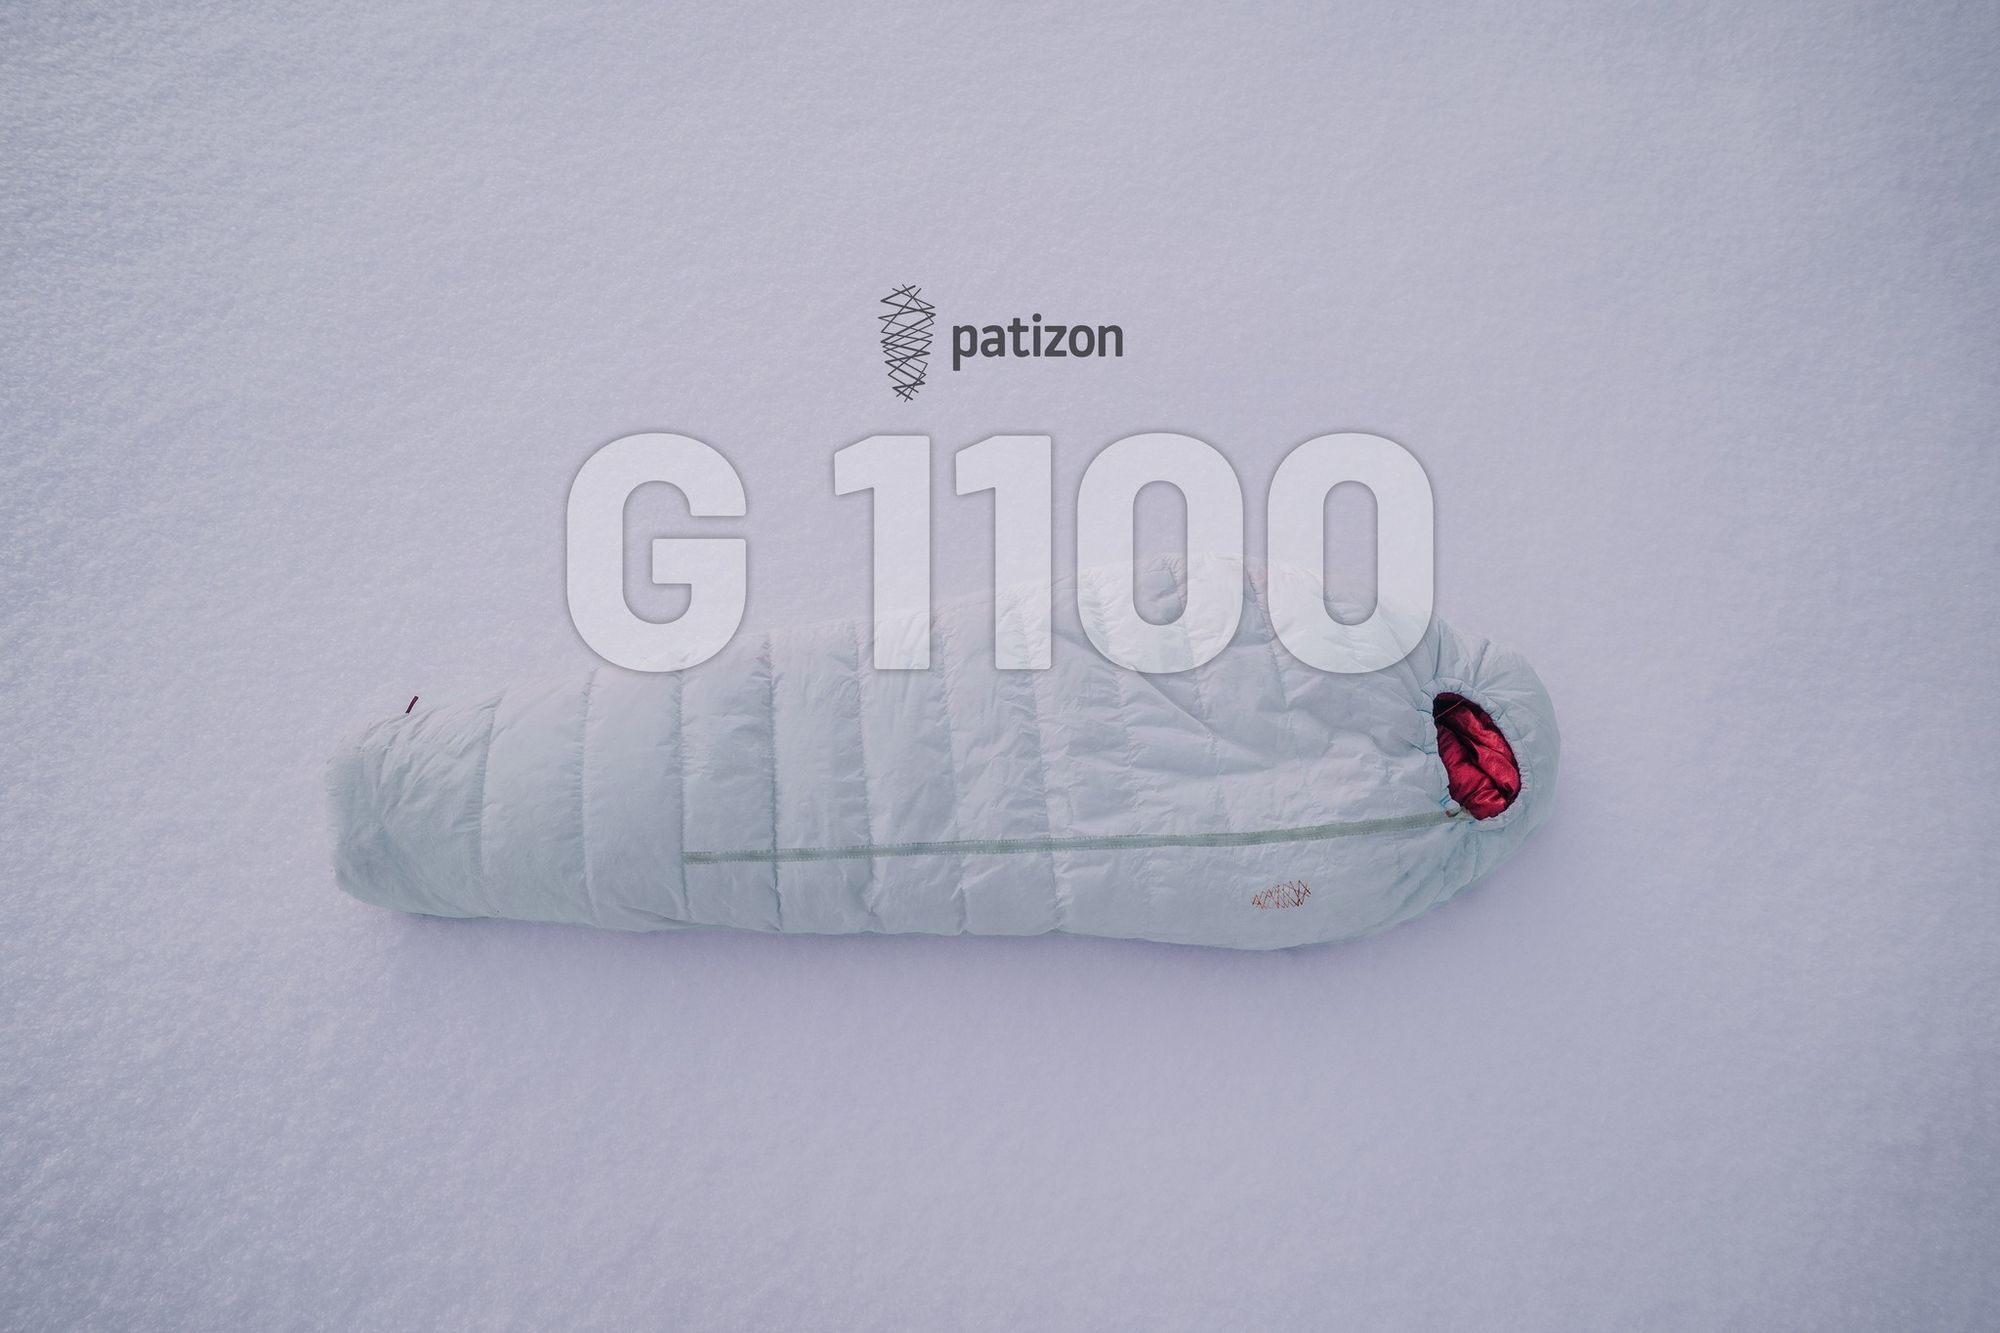 Novinky 04/24 - Patizon G1100 se slevou 40%